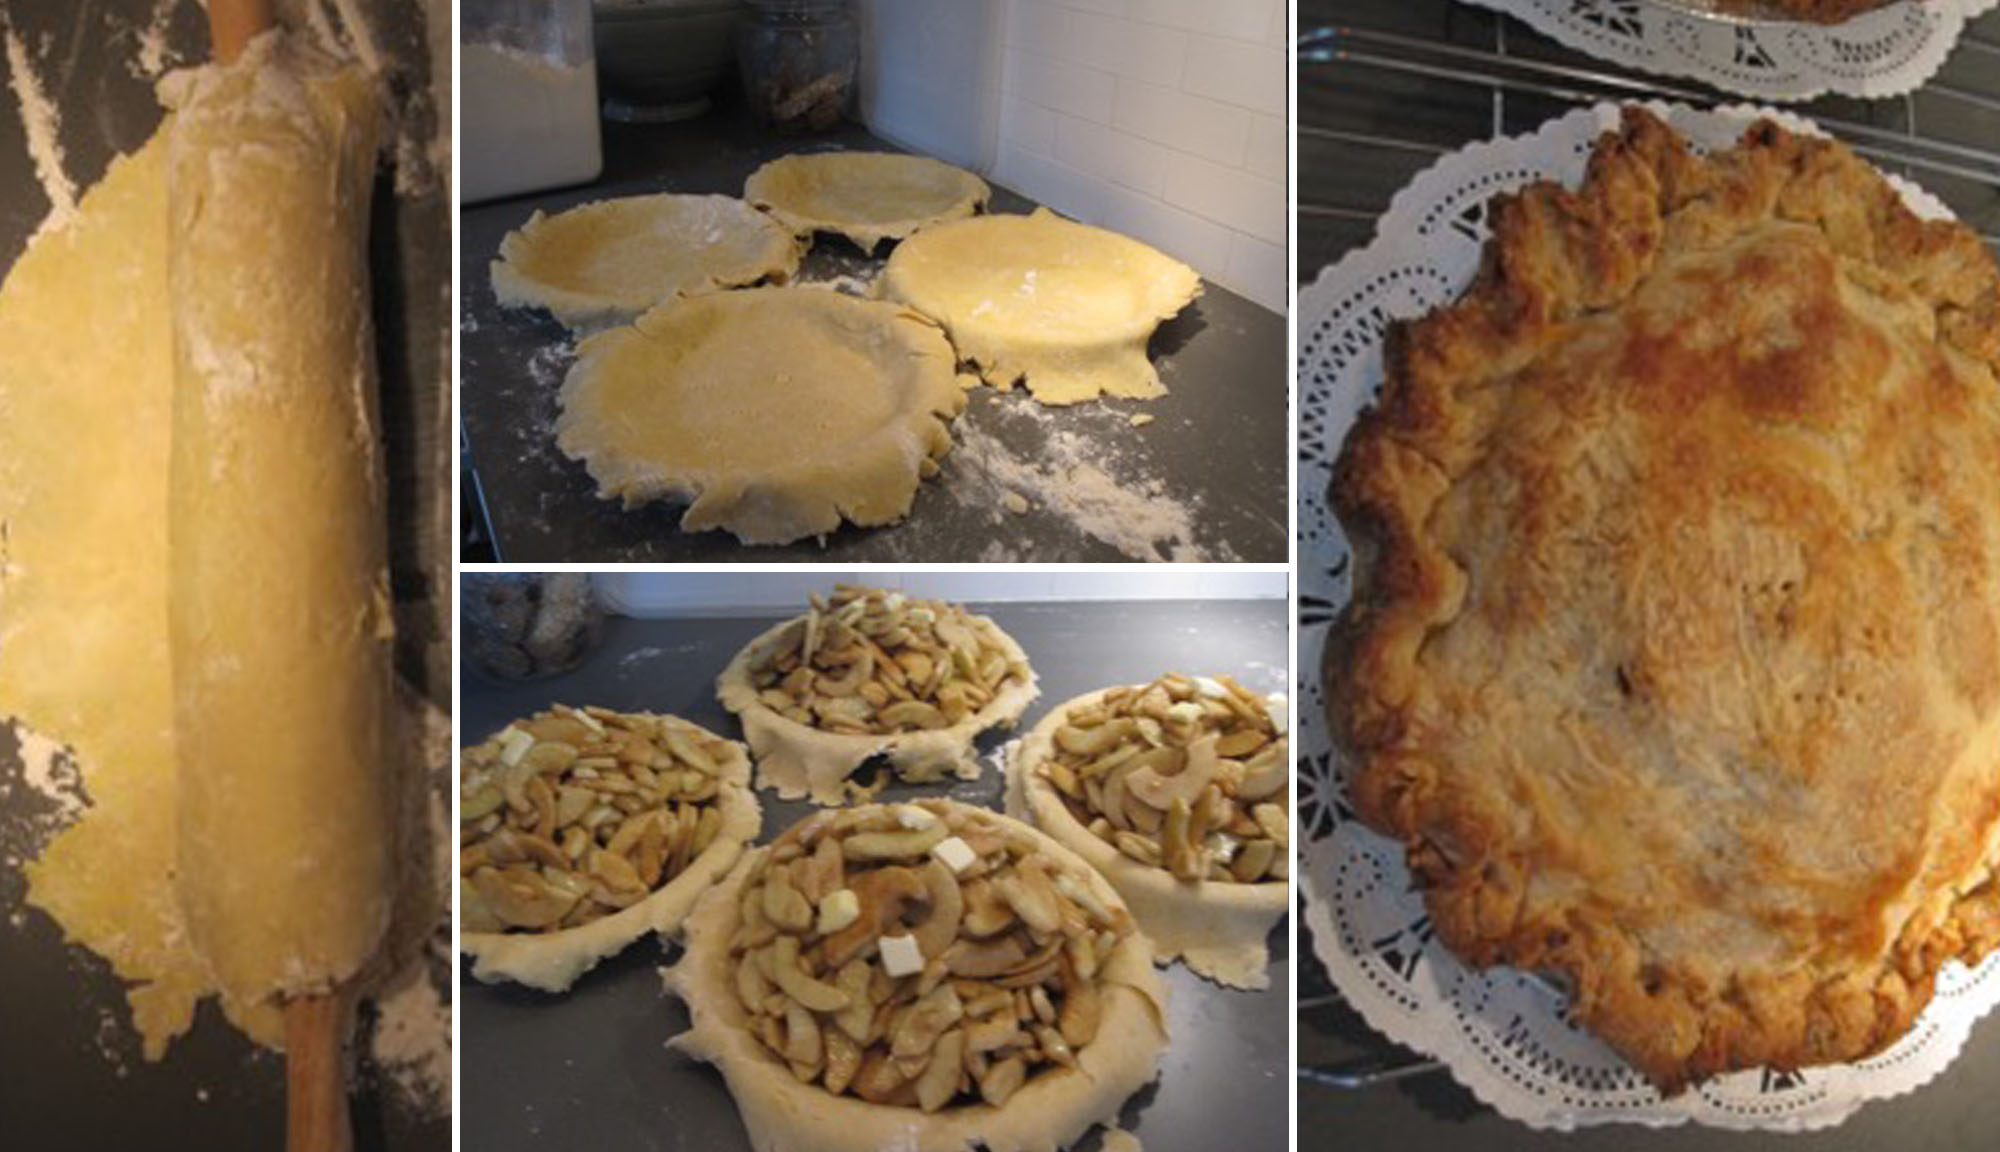 Mary Beth's Apple Pie